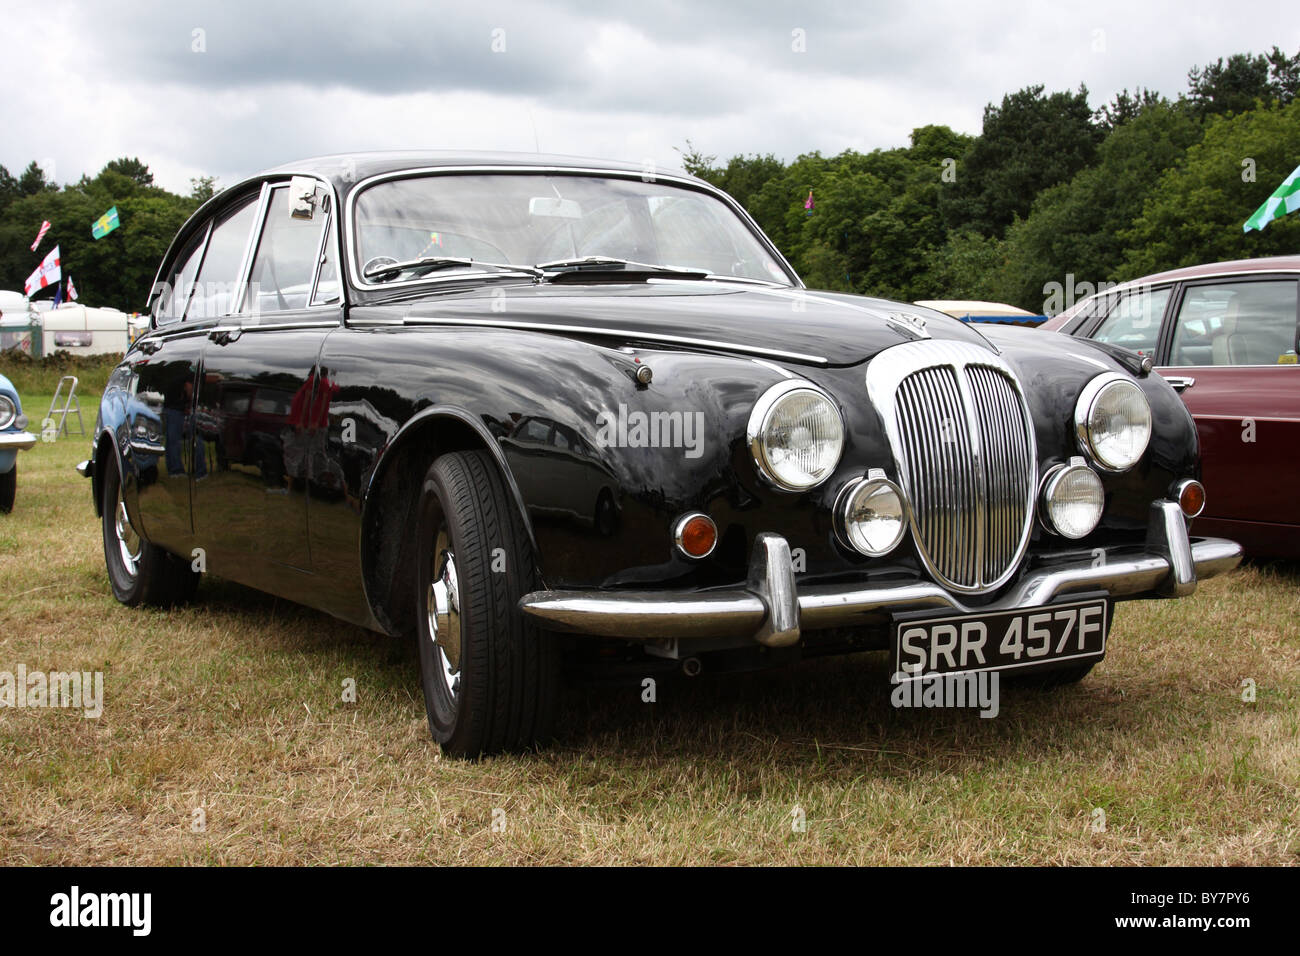 Une Daimler classic car à une exposition de voiture au Royaume-Uni. Banque D'Images